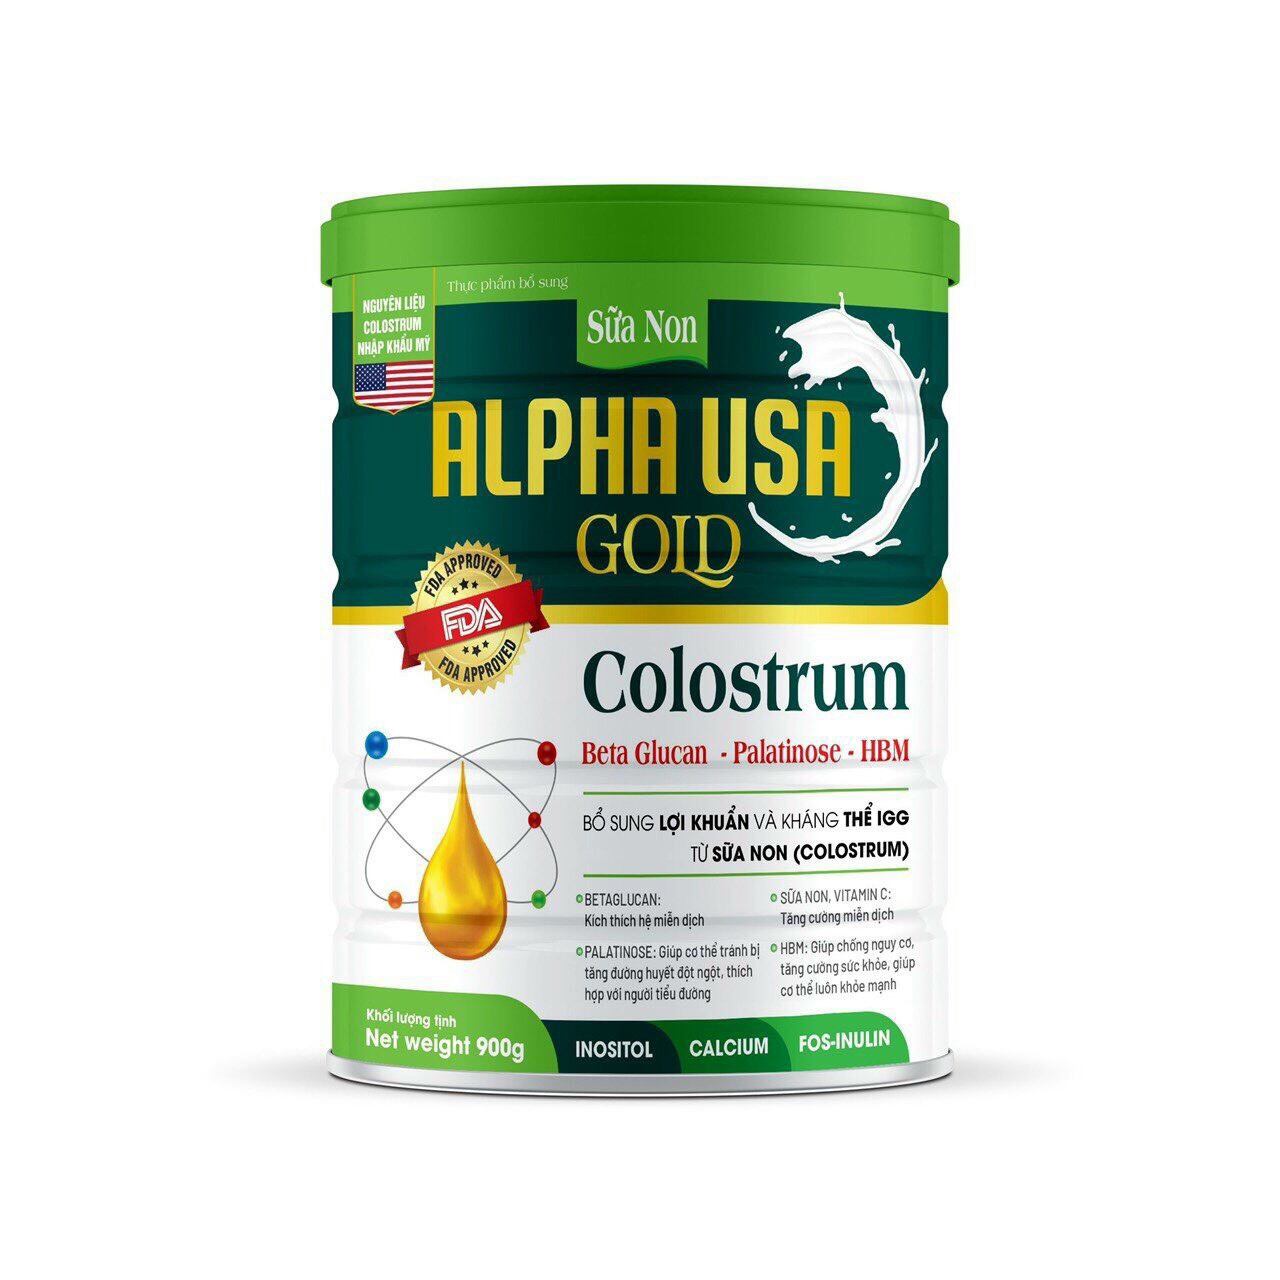 Sữa non ALPHA USA GOLD COLOSTRUM Hộp 900g, tăng sức đề kháng, bổ sung dinh dưỡng, nâng cao miễn dịch